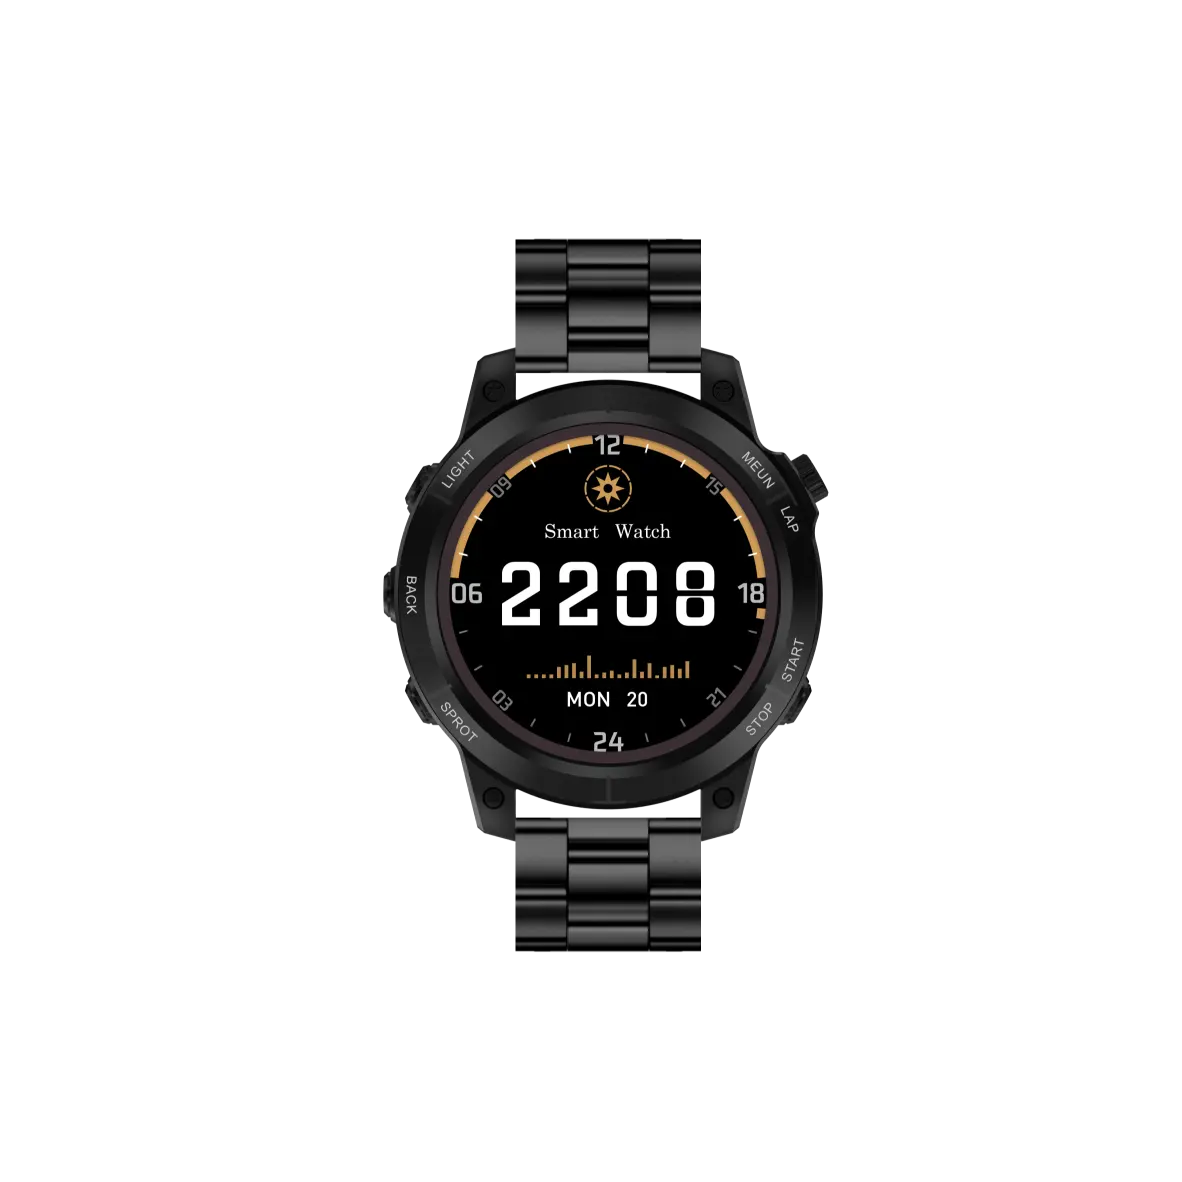 Nuevo reloj inteligente S70MAX Super, Correa 7 en 1 con pantalla táctil completa, reloj deportivo y deportivo con funda protectora